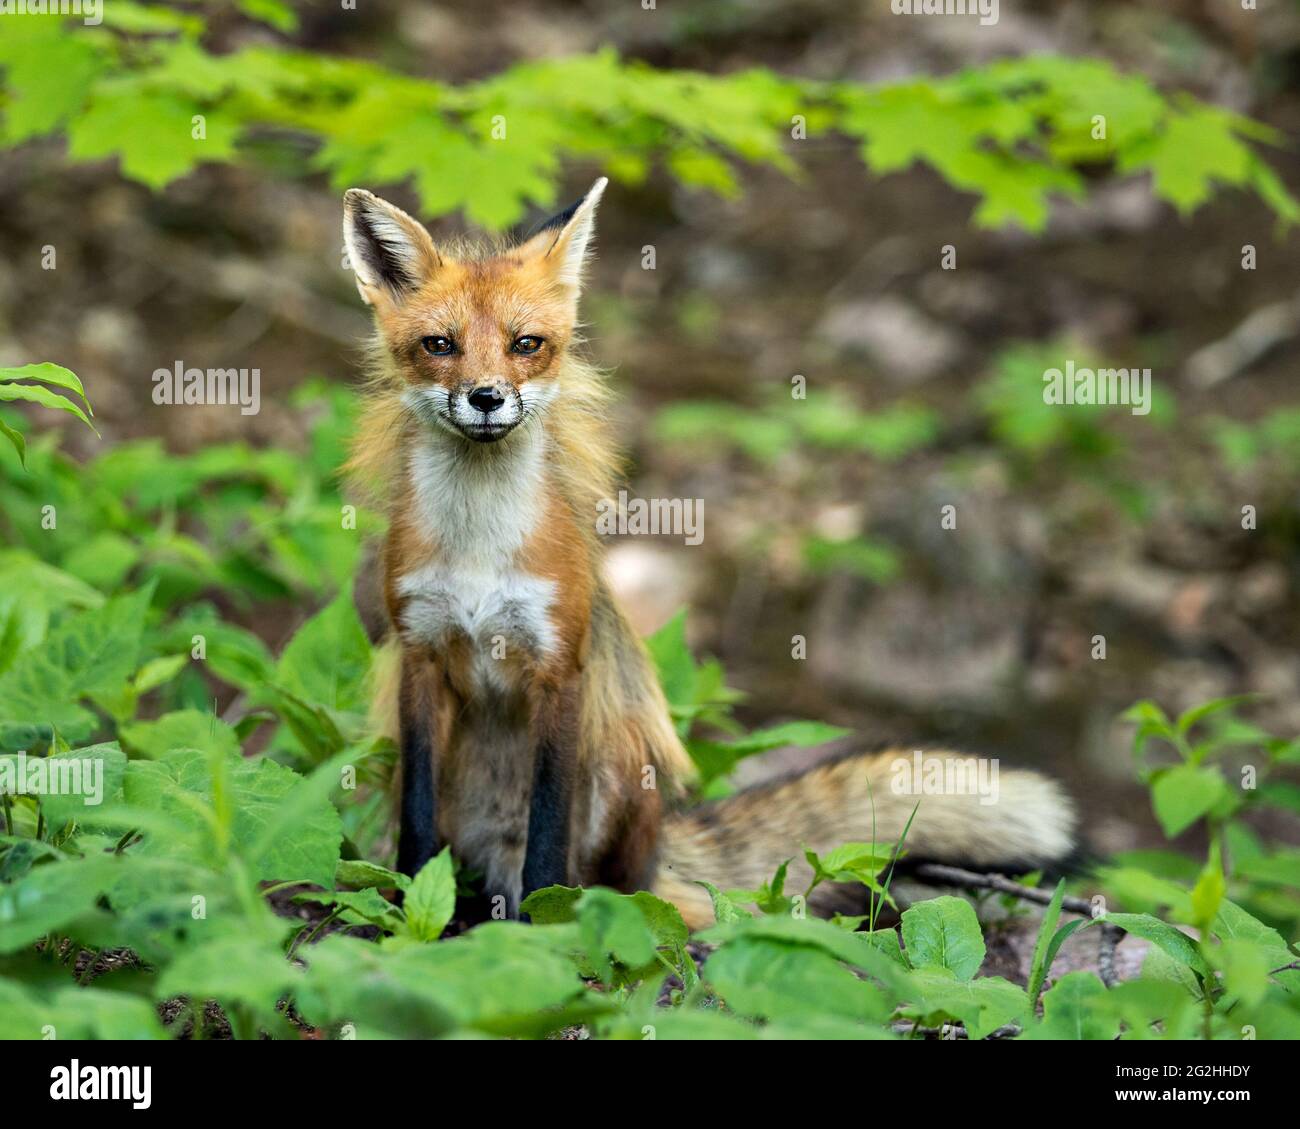 Vista ravvicinata del profilo Red Fox seduto e guardando la fotocamera con sfondo fogliame e primo piano nel suo ambiente e habitat. Immagine. Foto. Foto Stock